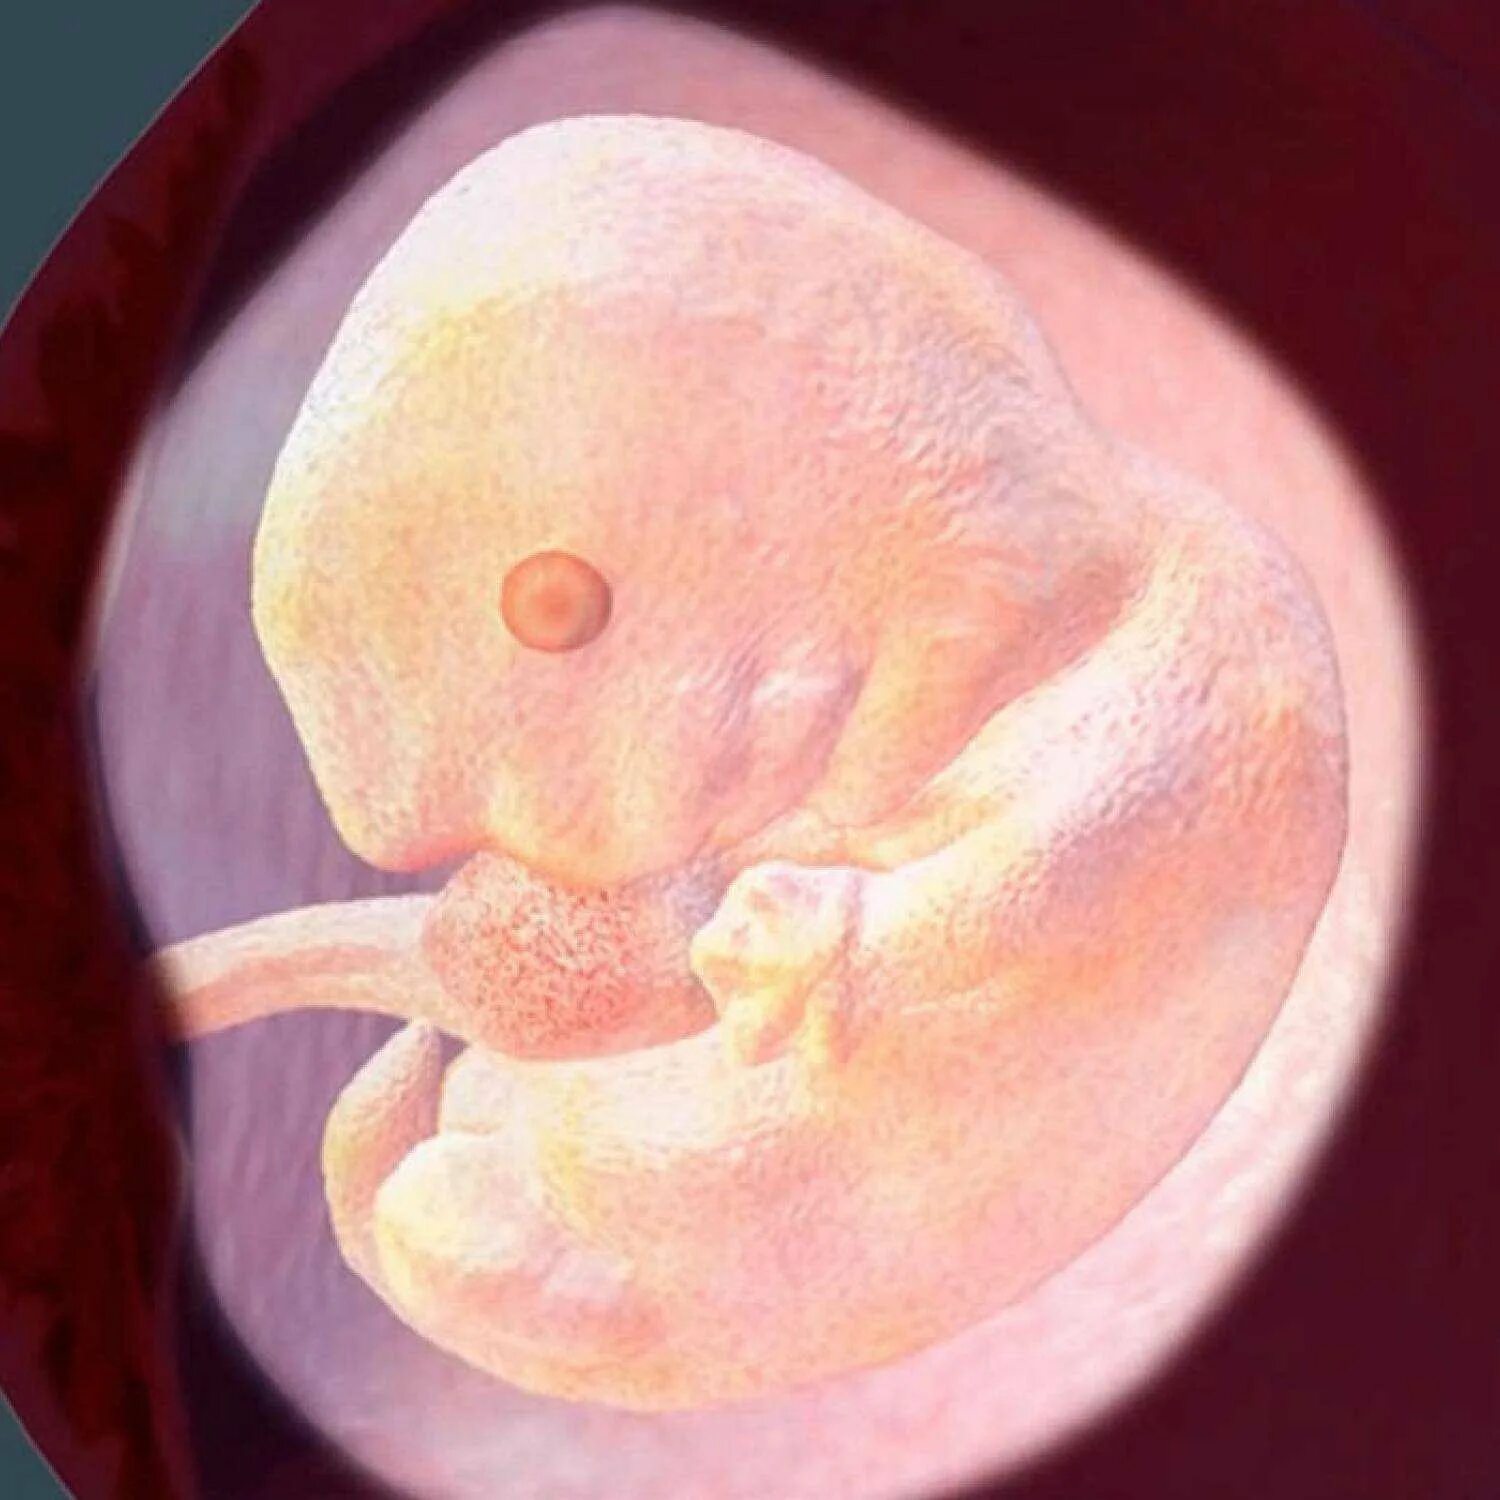 Малыш на 8 акушерской неделе беременности. 8 Недель беременности фото плода. Эмбрион на 8 неделе беременности. Эмбрион на 8 неделе акушерской беременности. Как выглядит ребенок на 8 неделе